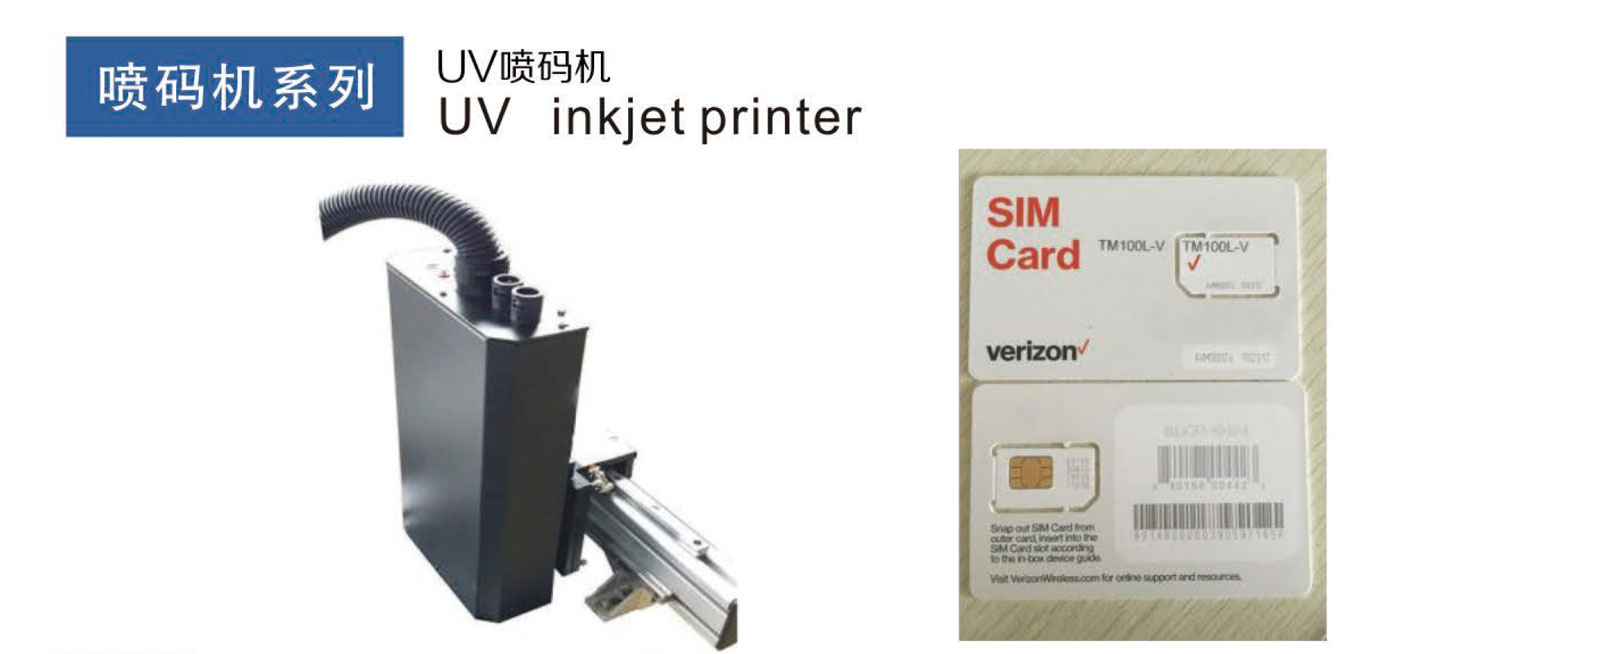 成都申越UV 高分辨率喷码机 UV inkjet printer